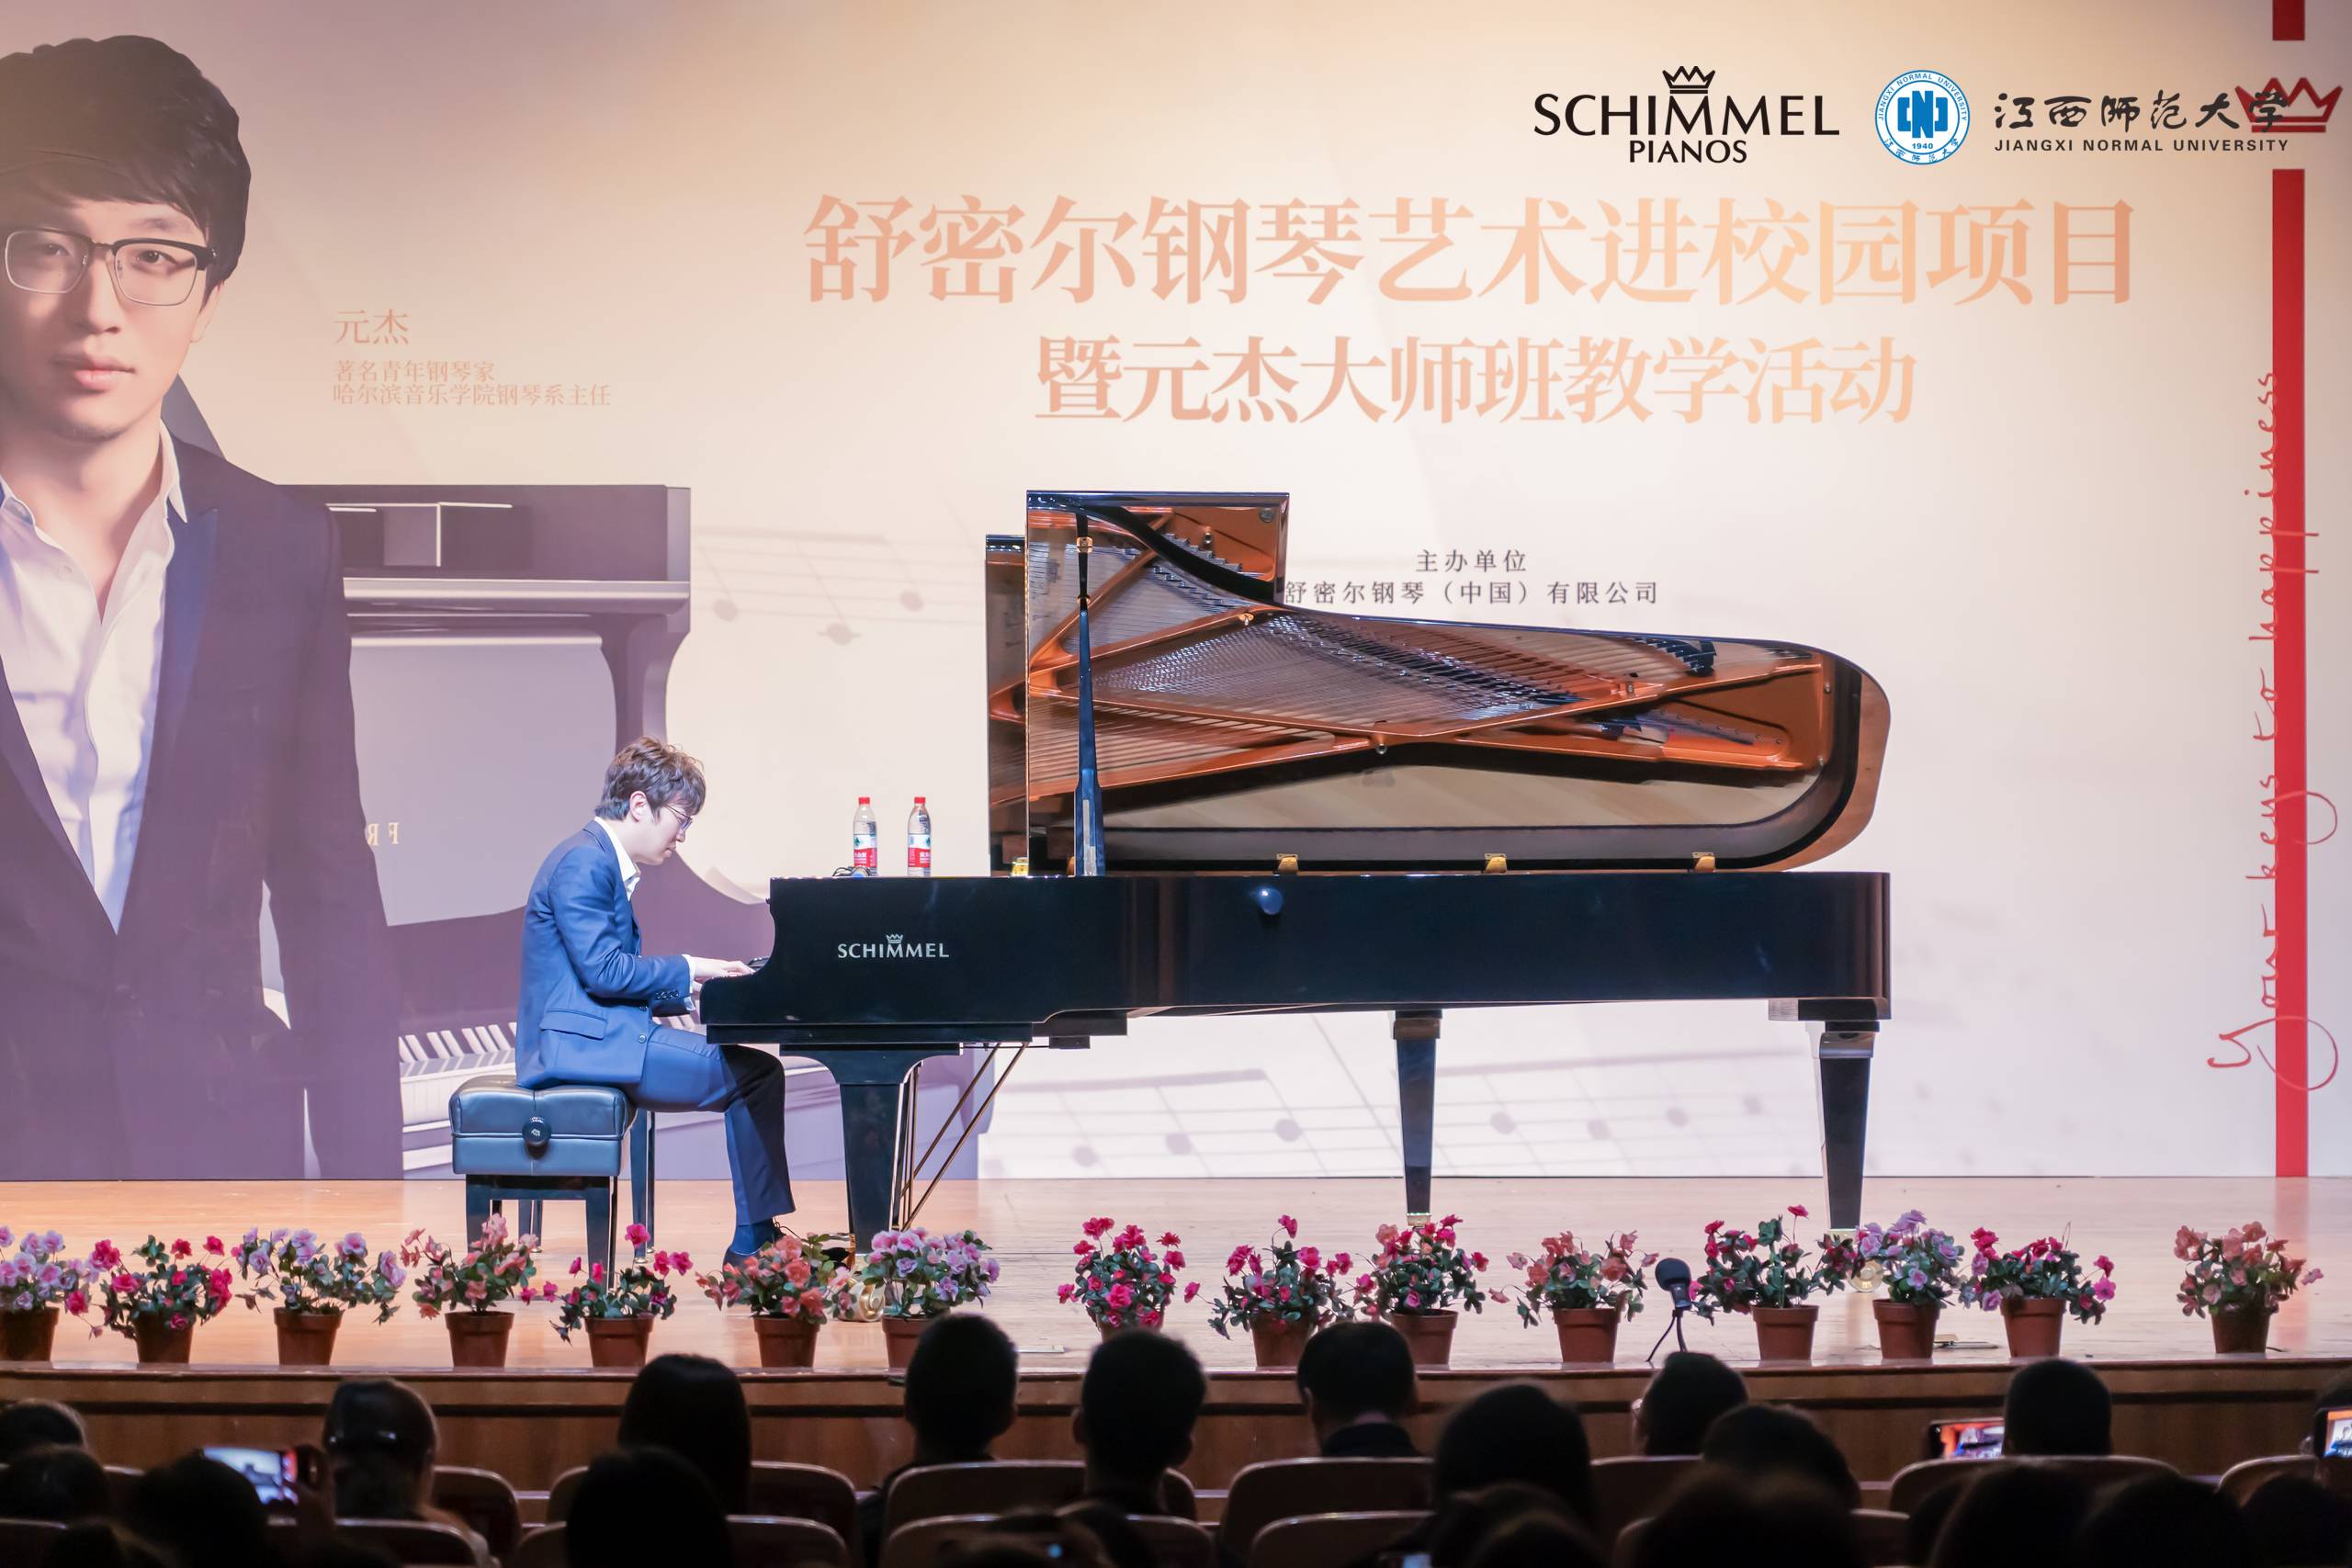 舒密尔钢琴艺术进校园 | 元杰大师班教学活动成功举办